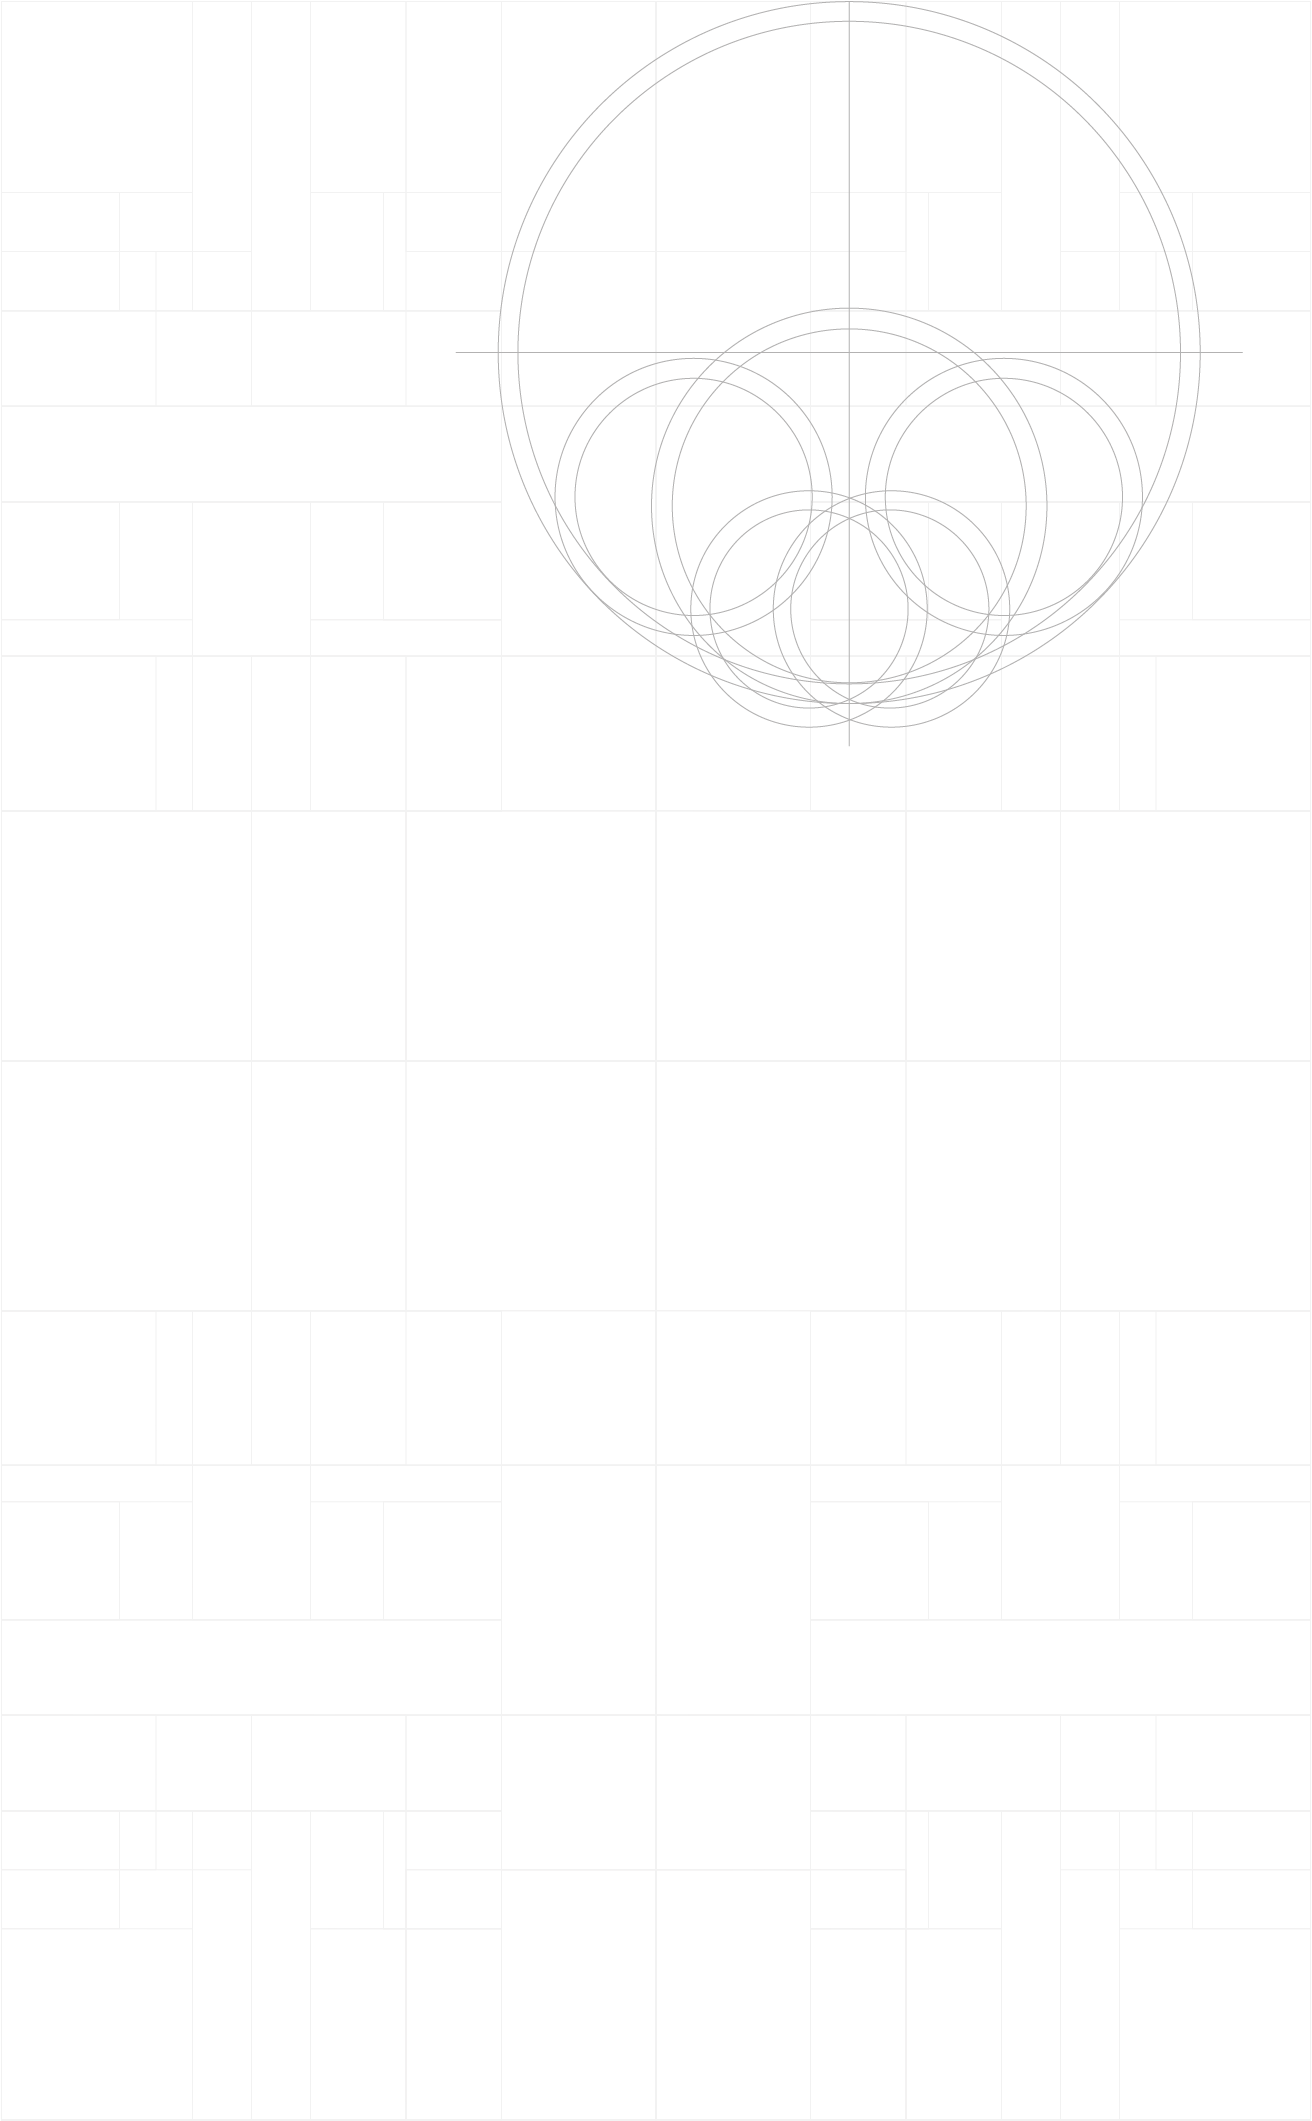 Logo de marca Kattegat Muebles. Se ve la grilla de construcción gerométrica del isotipo.